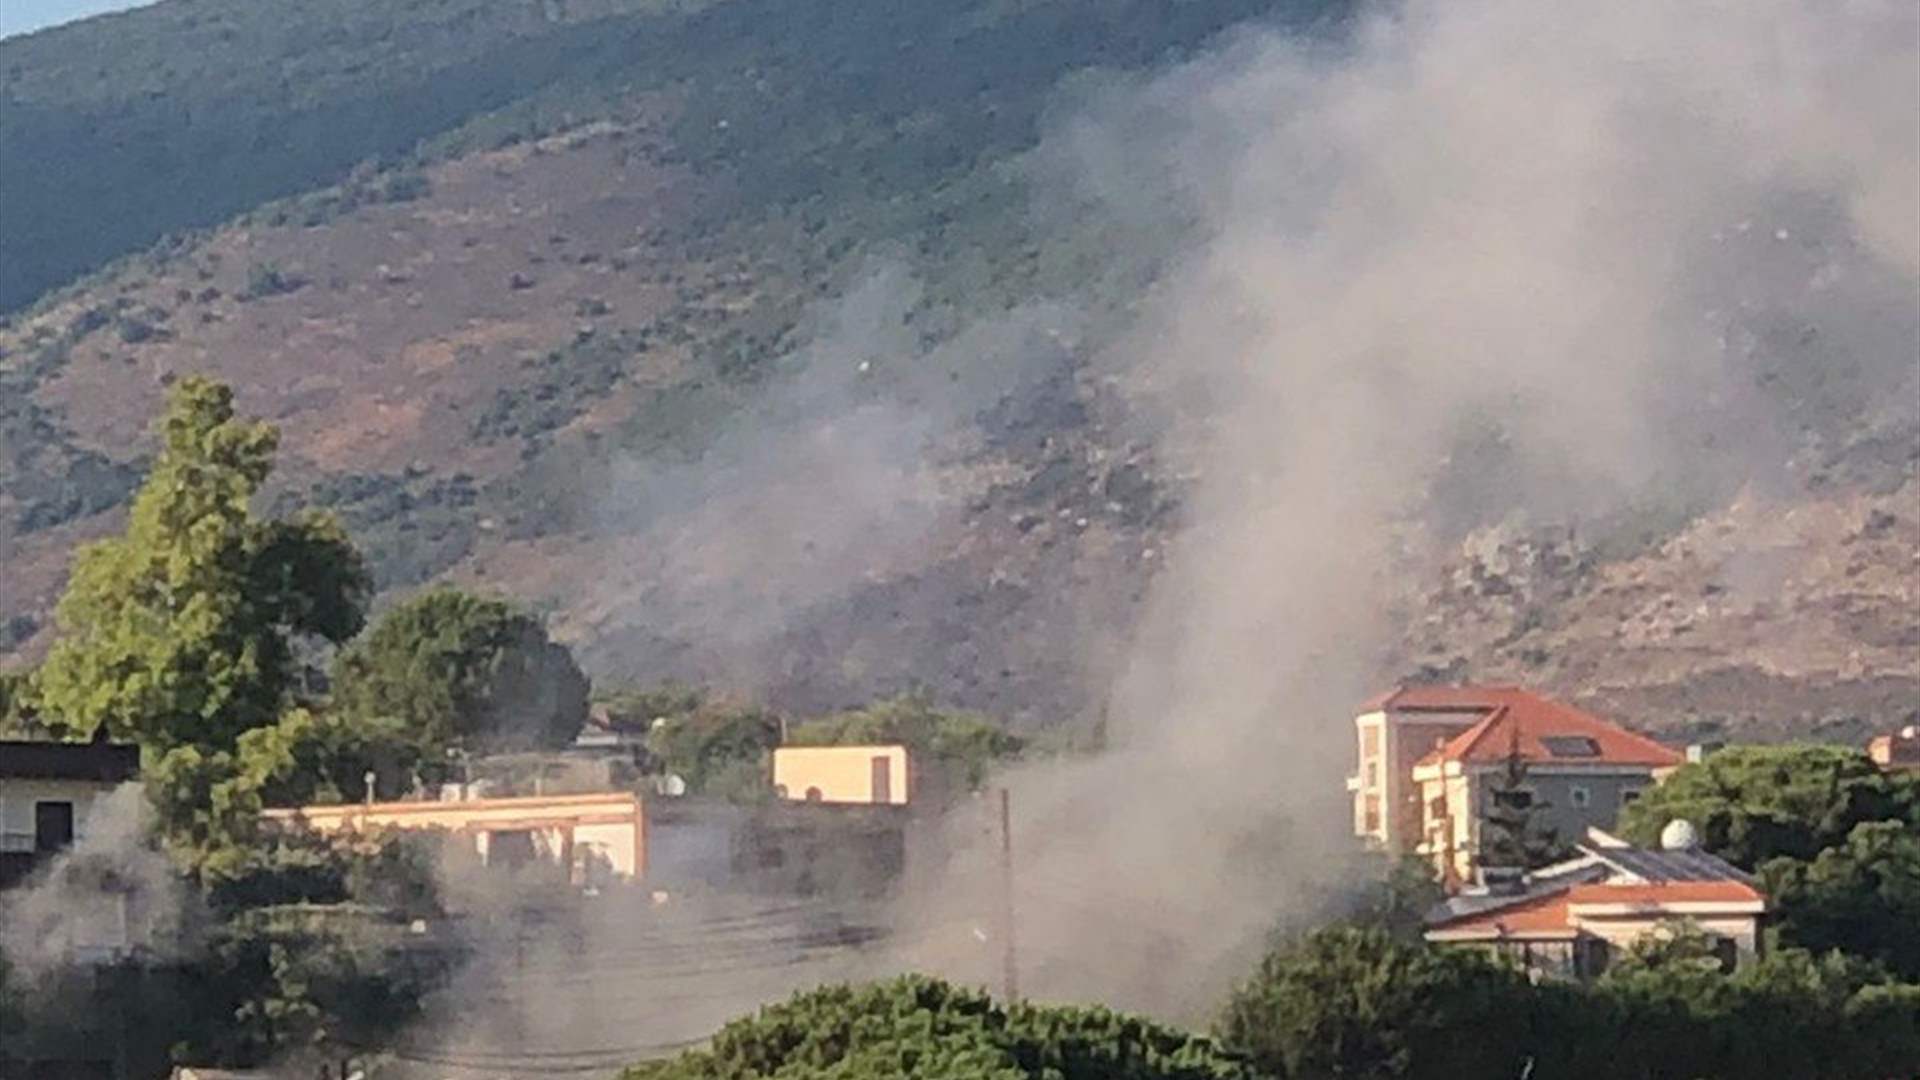 Airstrike hit motorcycle in Kfar Roummane, Nabatieh; injuries reported